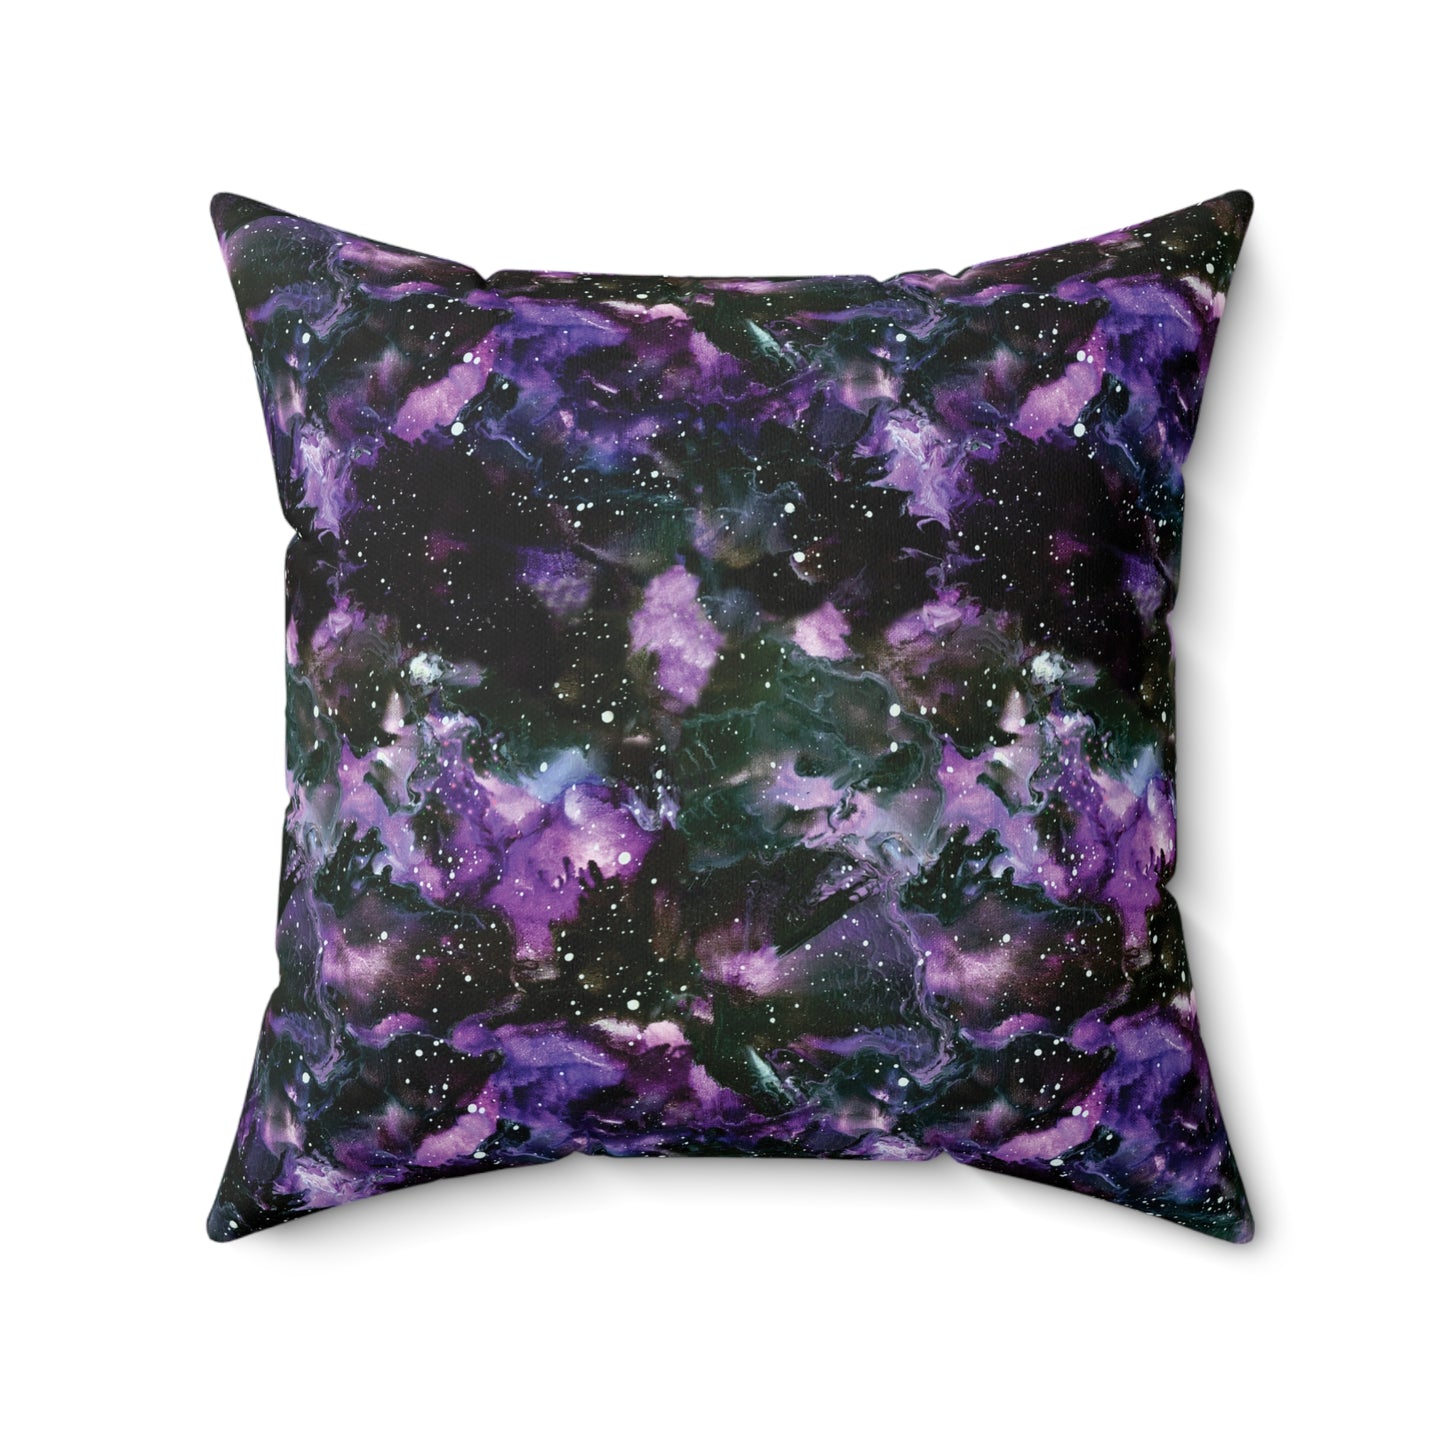 Faux Suede Square Pillow - Purple Storm